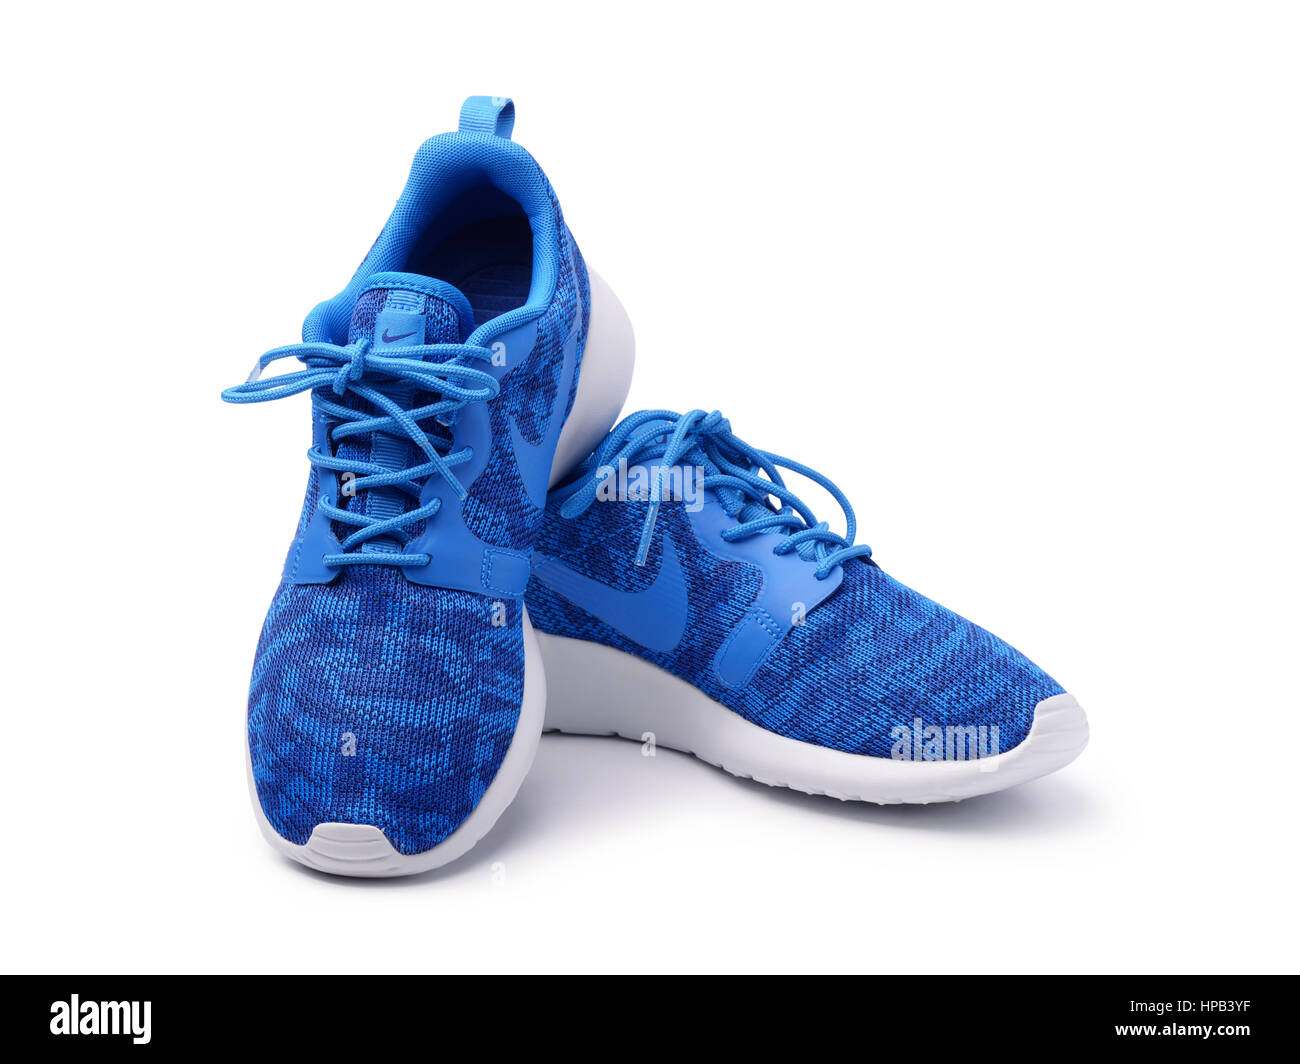 SAMARA, Rusia Junio 8, 2015: mujer Nike zapatillas para correr, entrenamiento, en gris y azul, mostrando el logo de Nike, a título ilustrativo, la editorial Fotografía de stock - Alamy